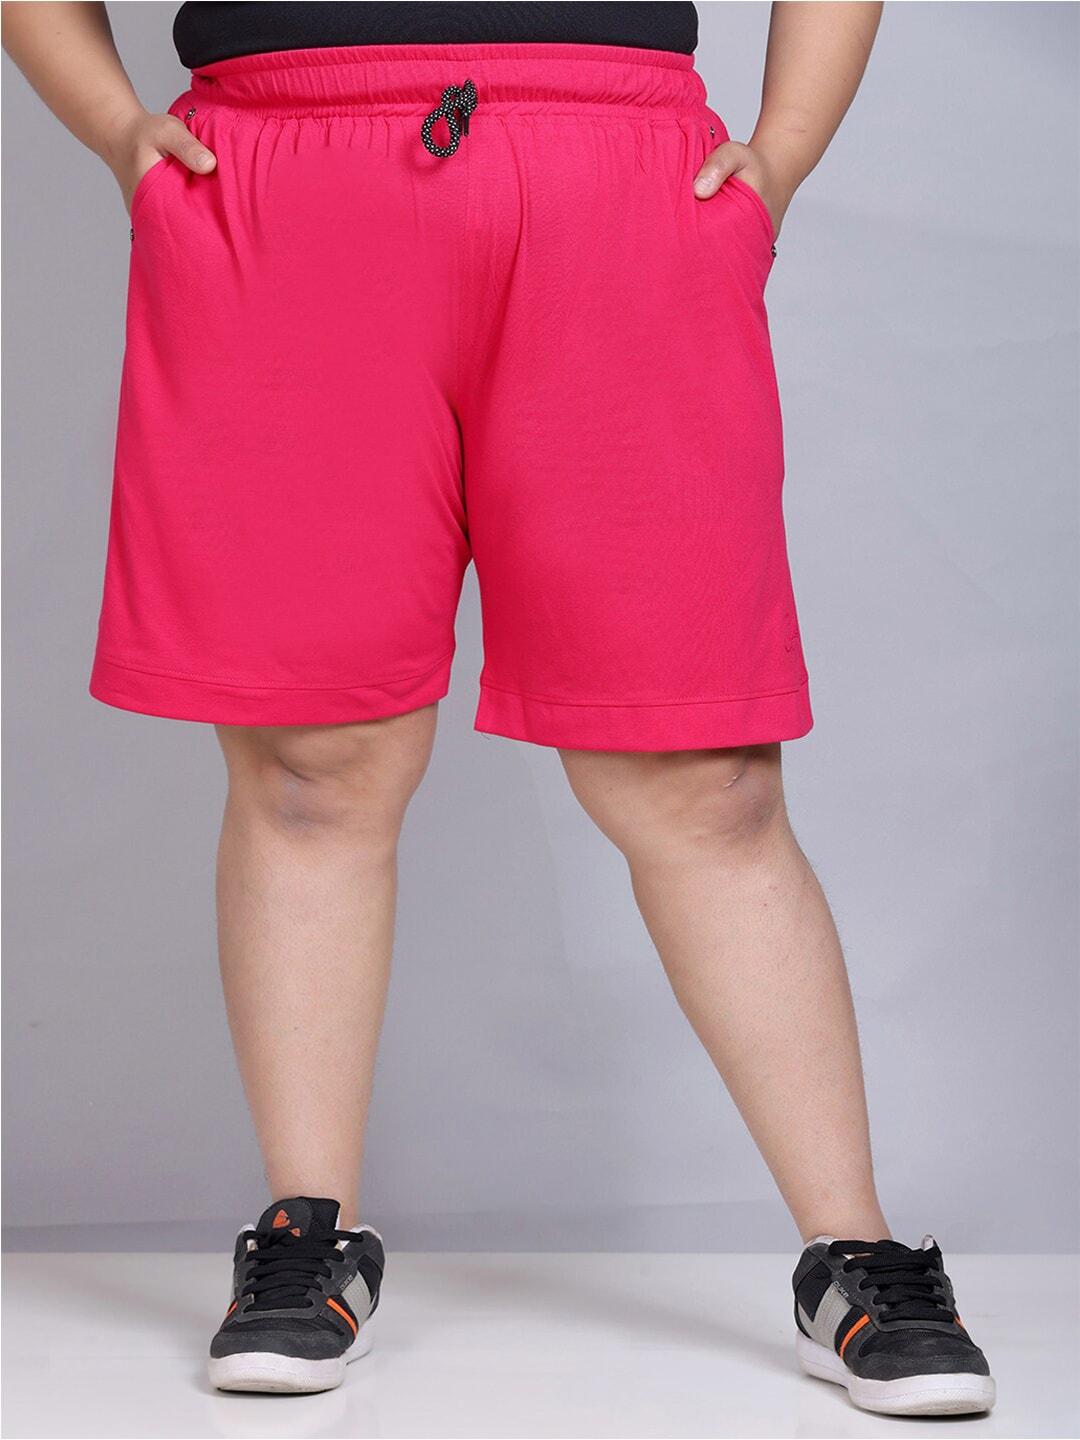 cupid-women-plus-size-cotton-lounge-shorts